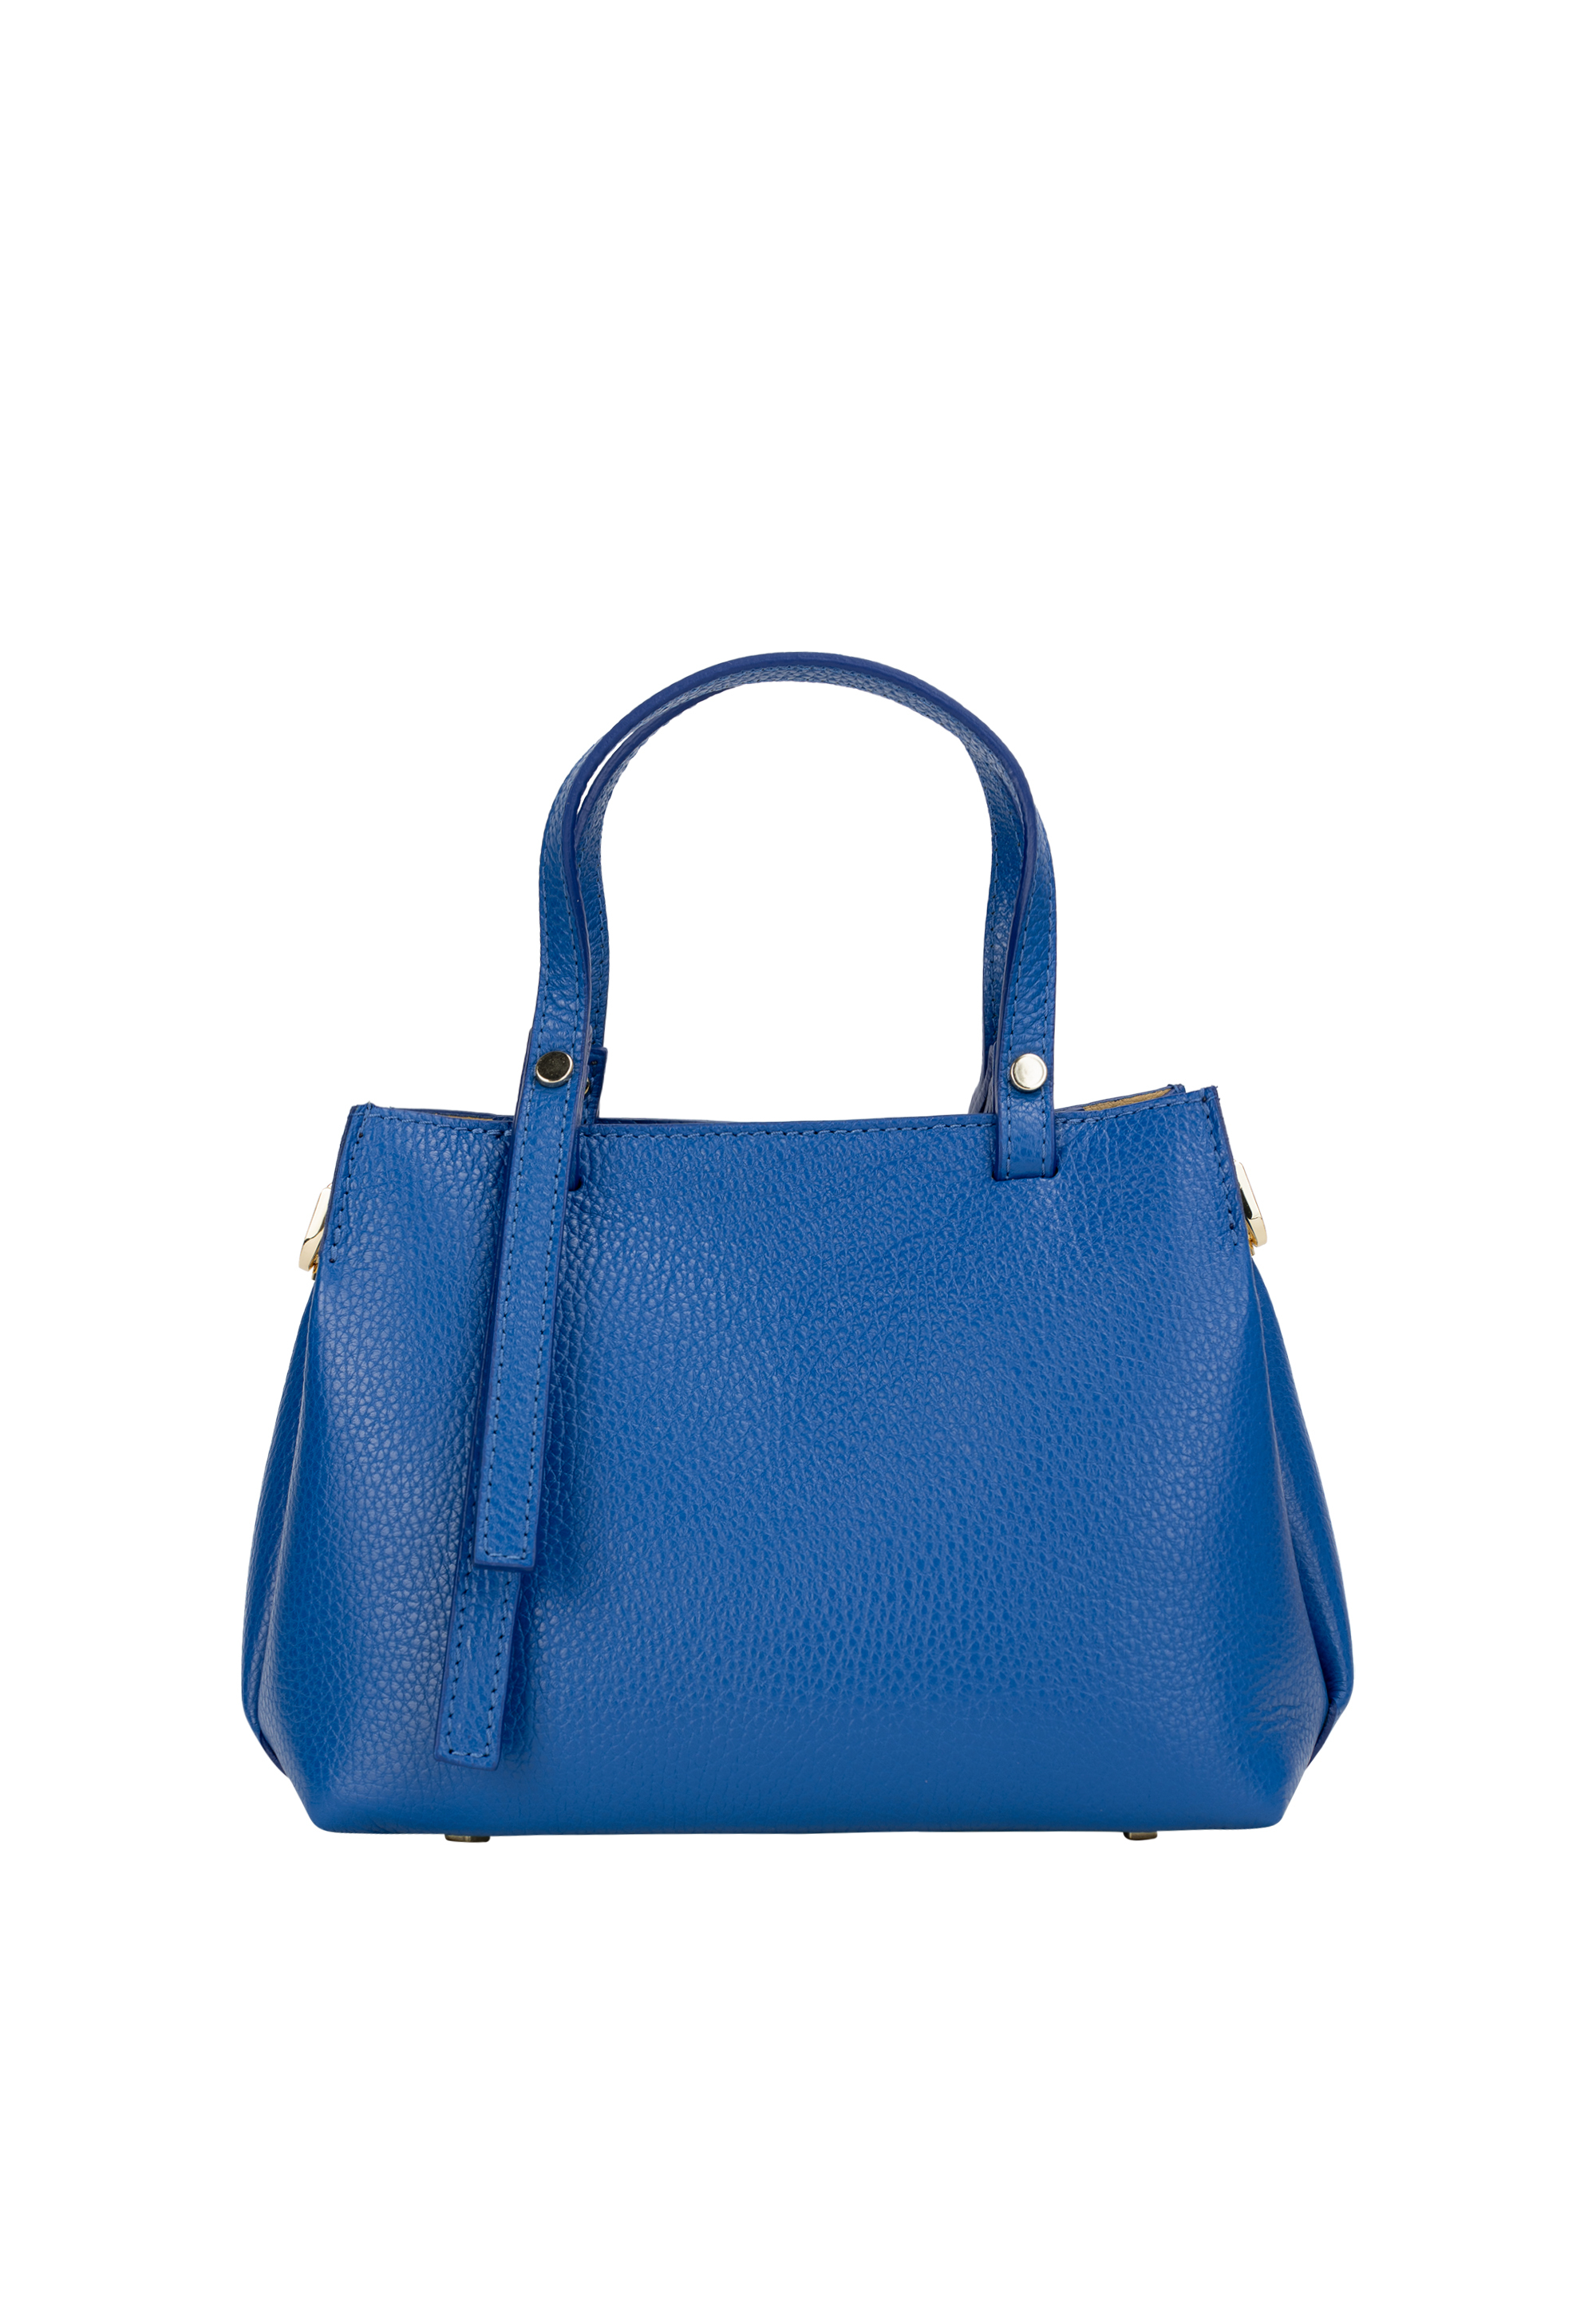 Сумка через плечо NAEMI Handtasche, цвет Azurblau сумка через плечо naemi handtasche цвет azurblau